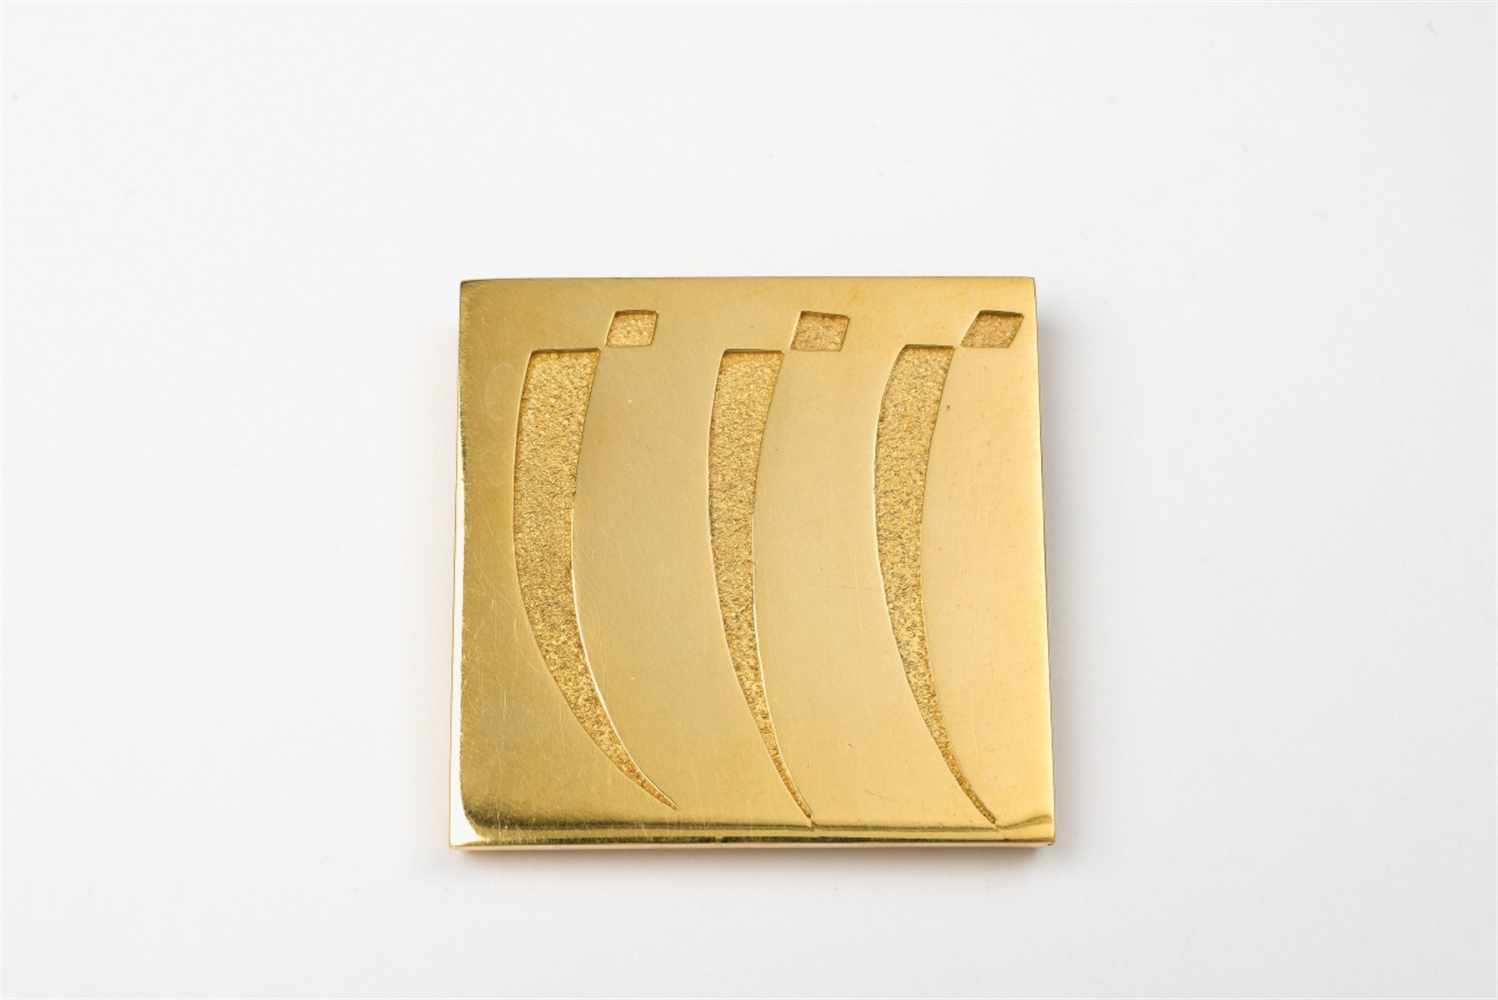 Brosche "Dreissig"18/21 kt Gelbgold. Quadratisch. Nach einem Detail des Gemäldes "Trente", 1937,